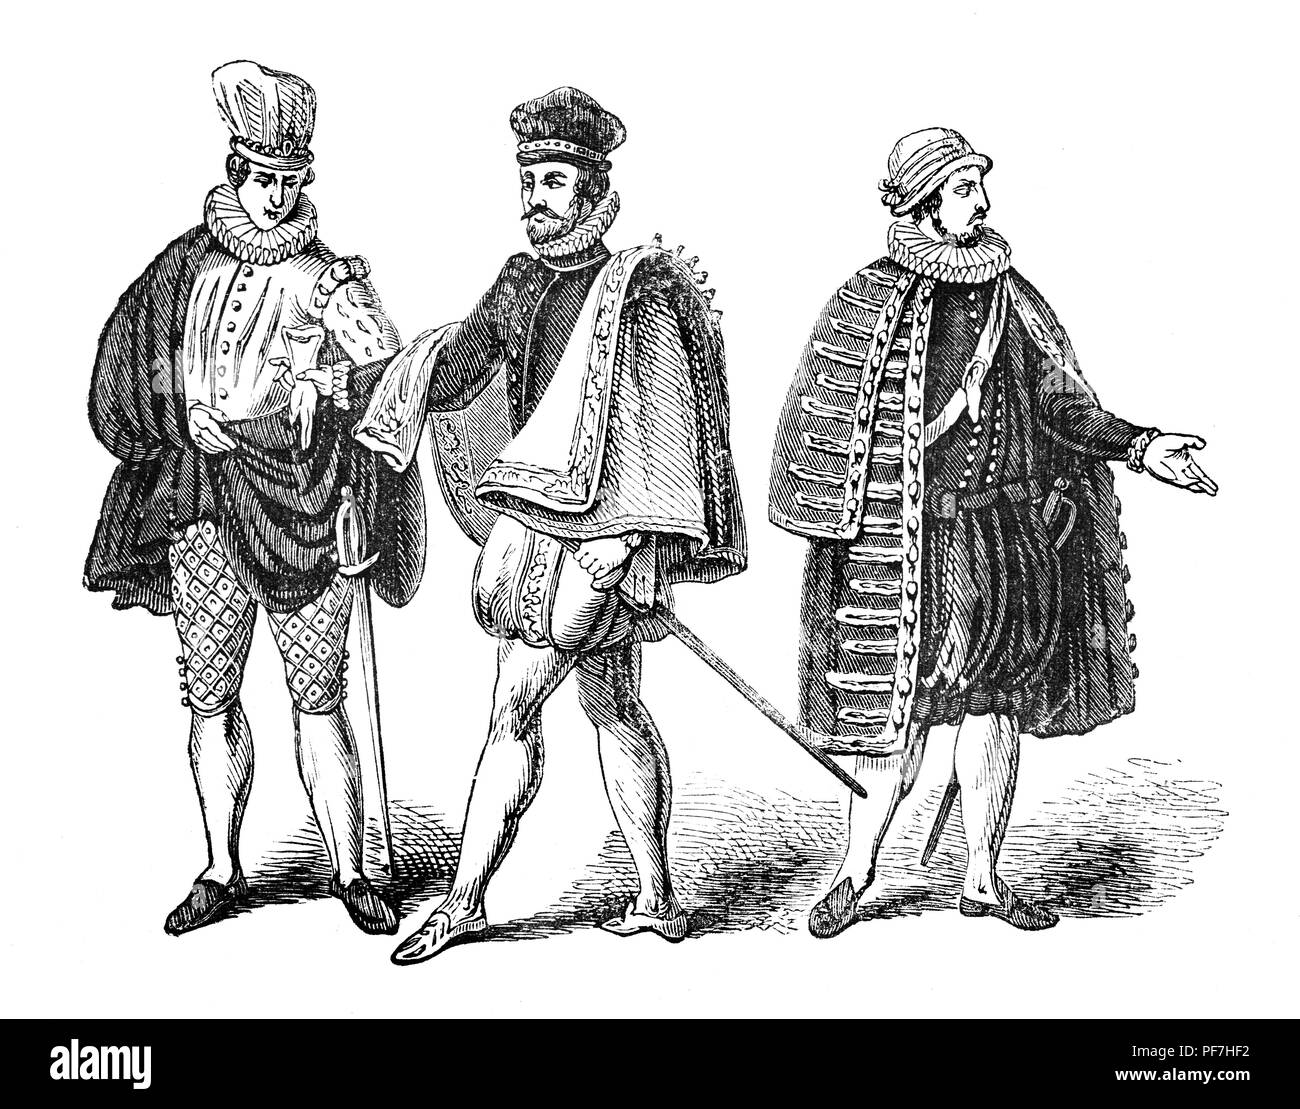 Moda: Per uomini d'oltremare durante il regno della regina Elisabetta I. Da sinistra - Veneziano, spagnolo e francese. Foto Stock